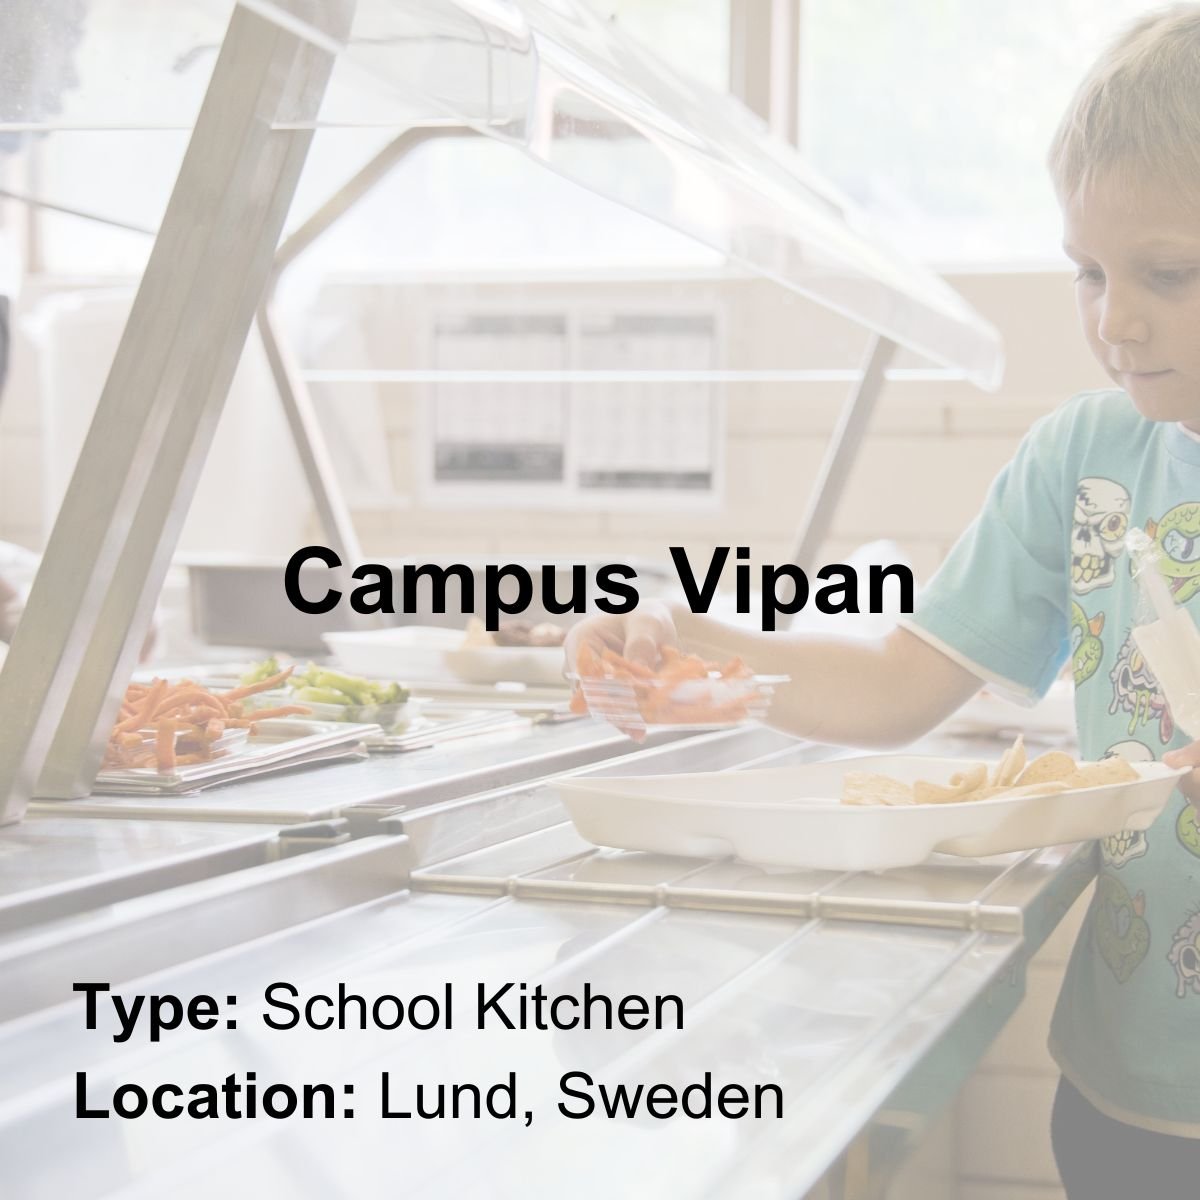 Campus Vipan